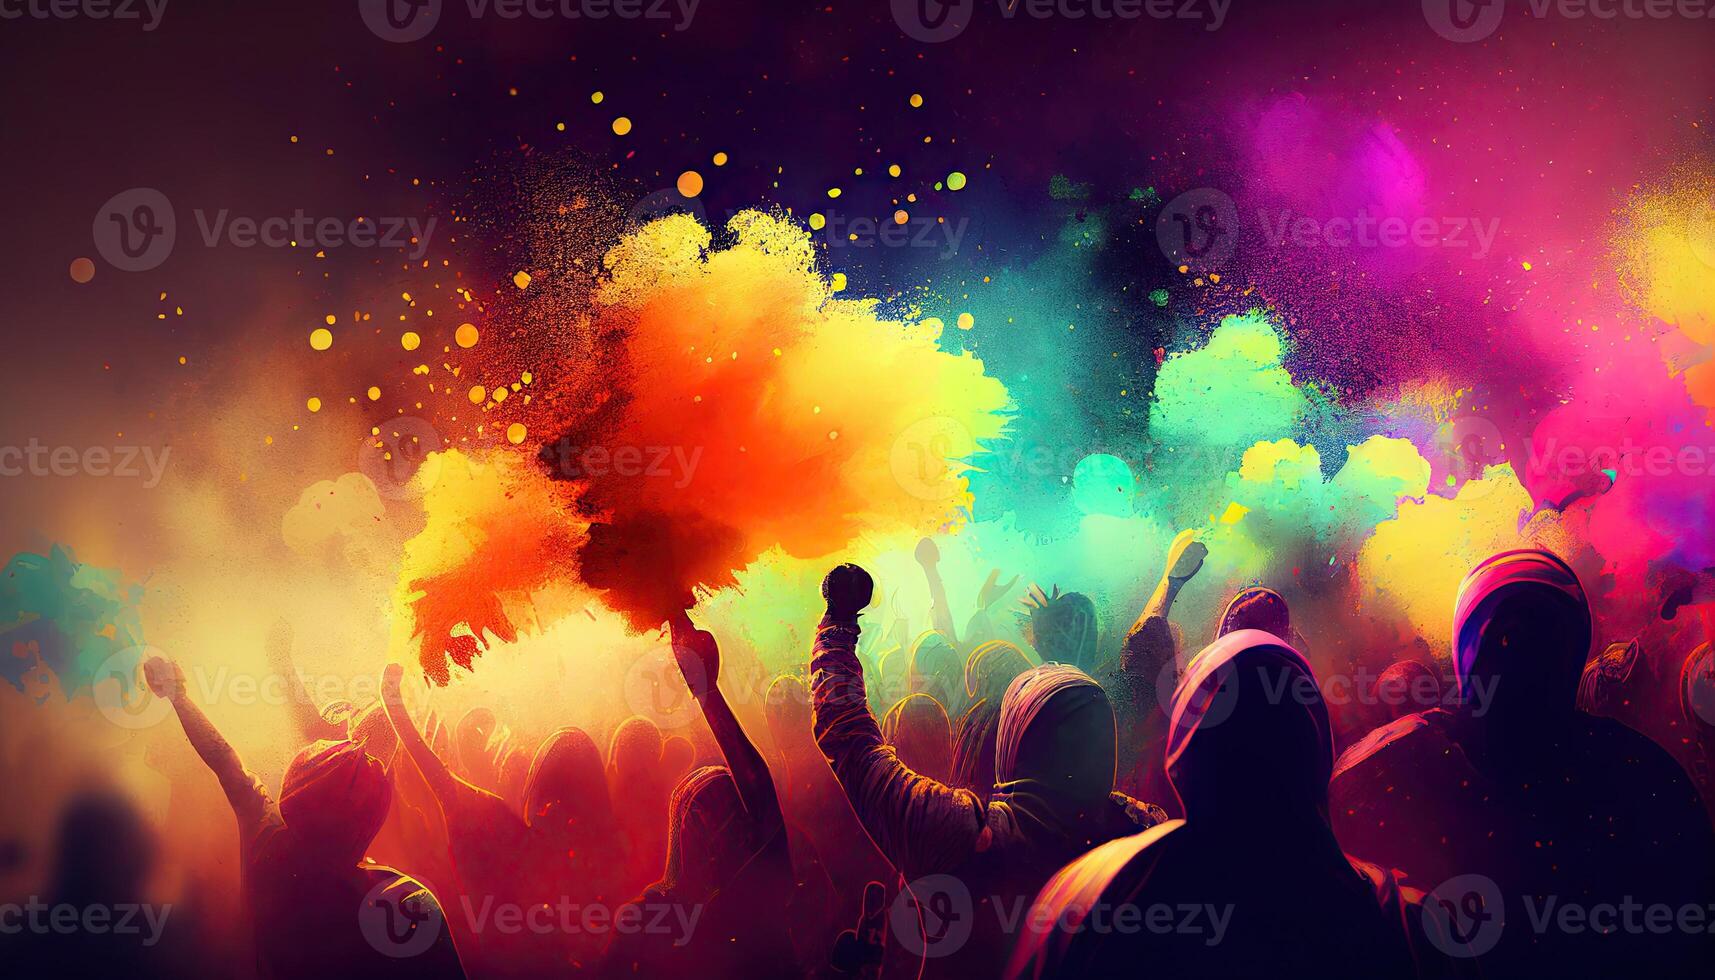 Holi celebration illustration, holiday festive. Colorful paint and powder photo